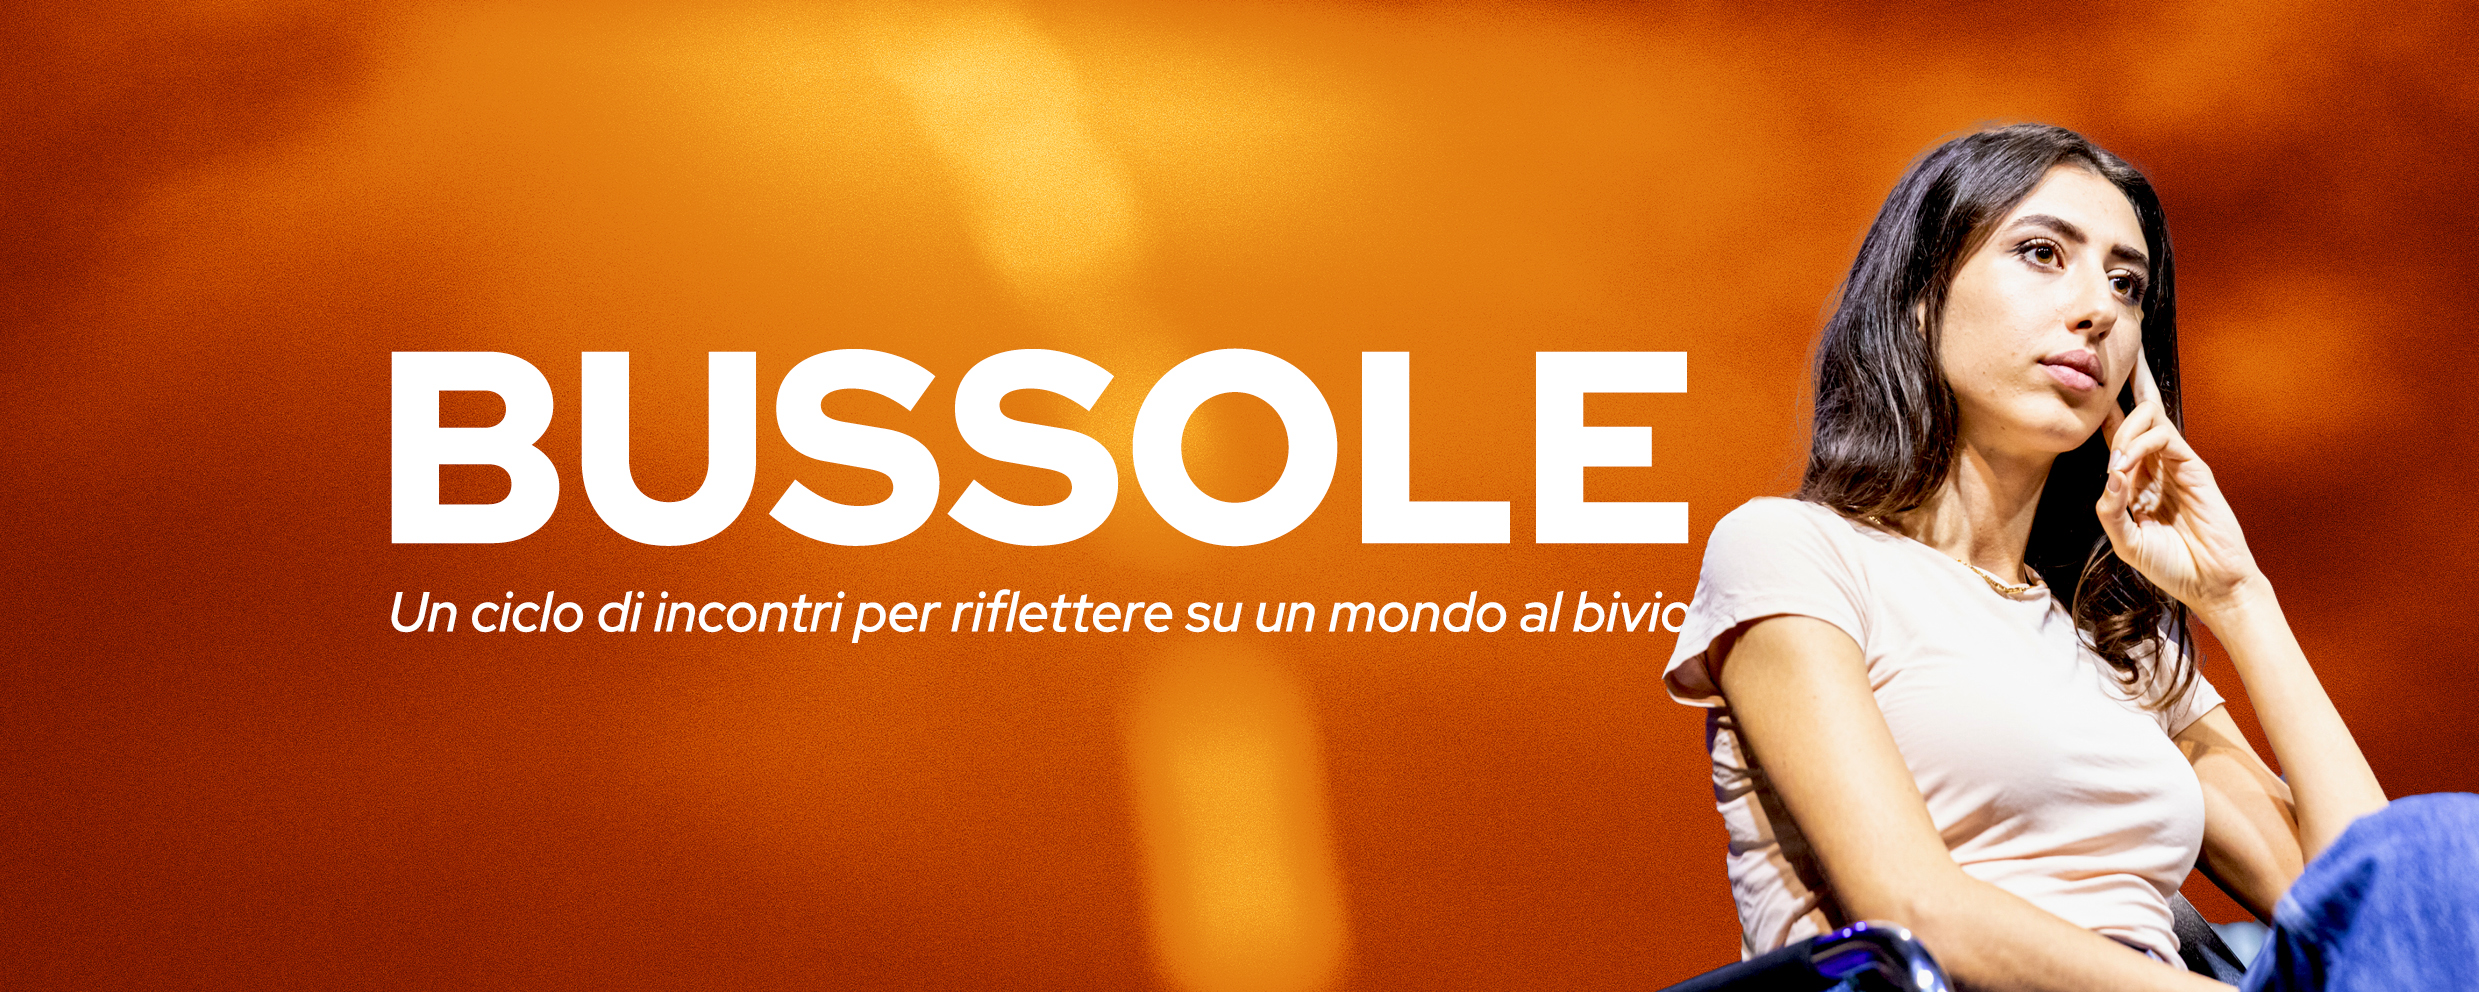 Bussole: “L’incendio” con Cecilia Sala a Castelfranco Emilia